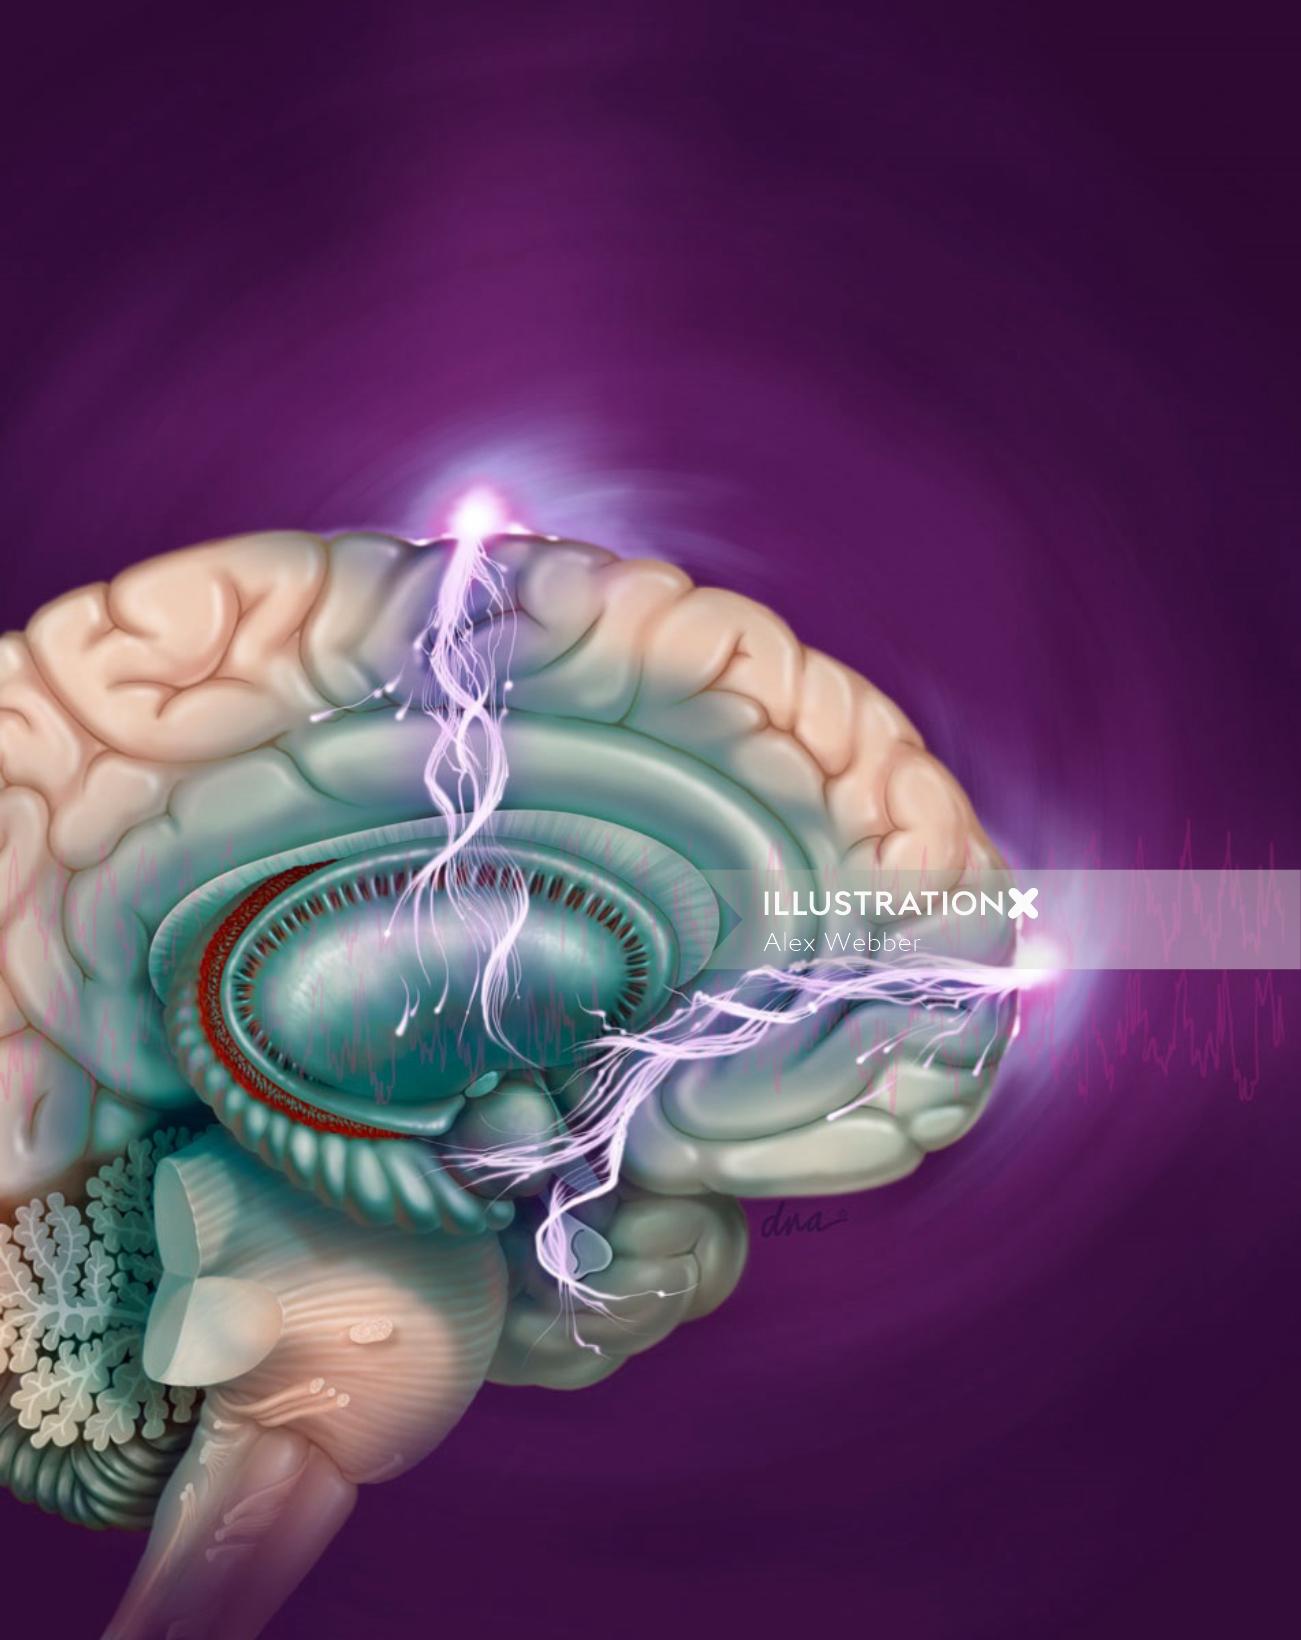 Illustration de la thérapie électroconvulsive par AlexBaker